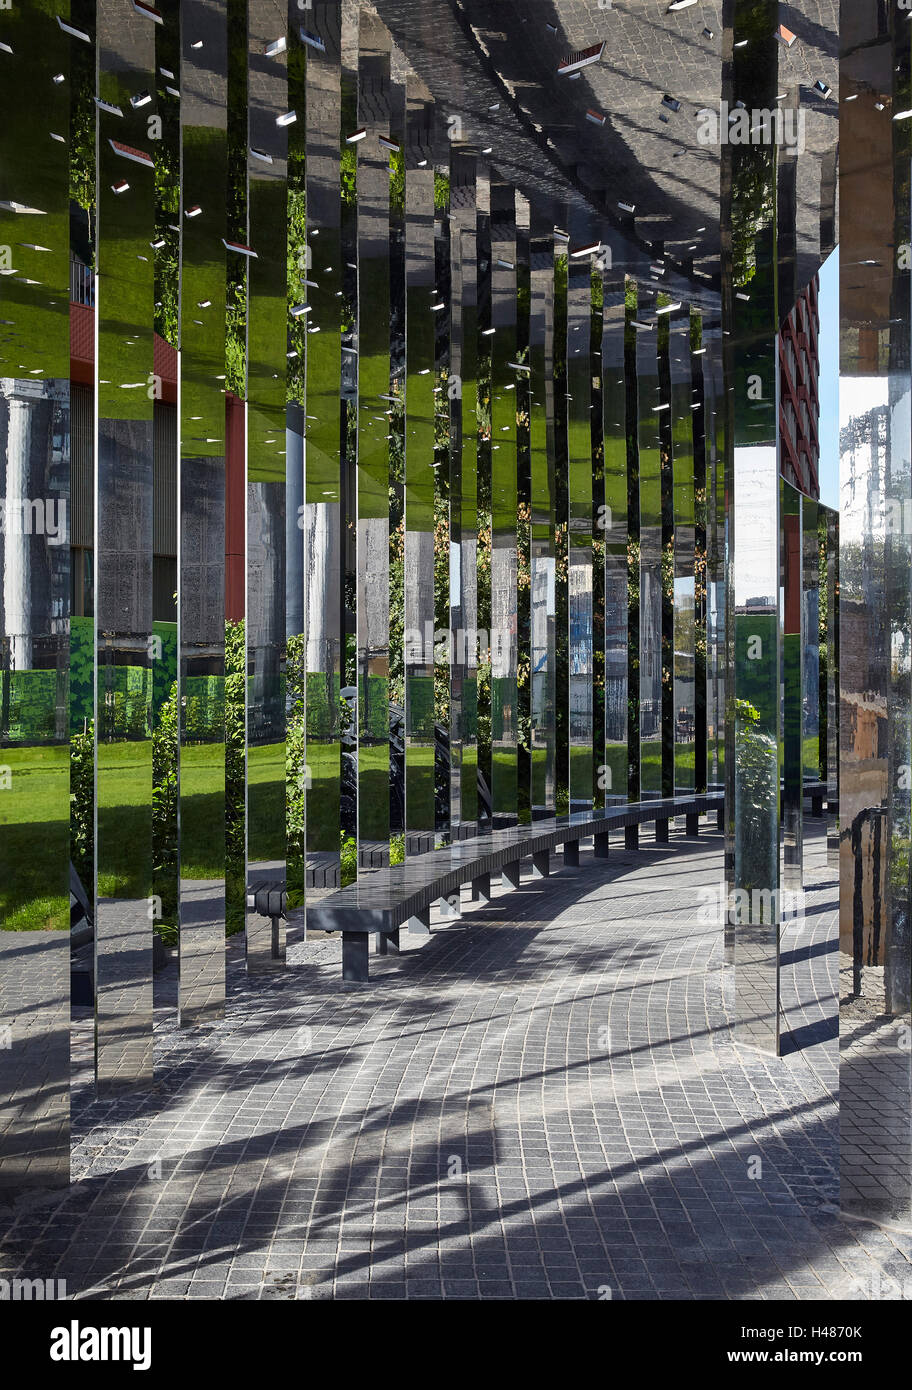 Vista di mirroring di applicazioni per i settori verticali e un basso banco curvo. Gasometro n. 8 Park, London, Regno Unito. Architetto: Campana architetti Phillips, 2016. Foto Stock